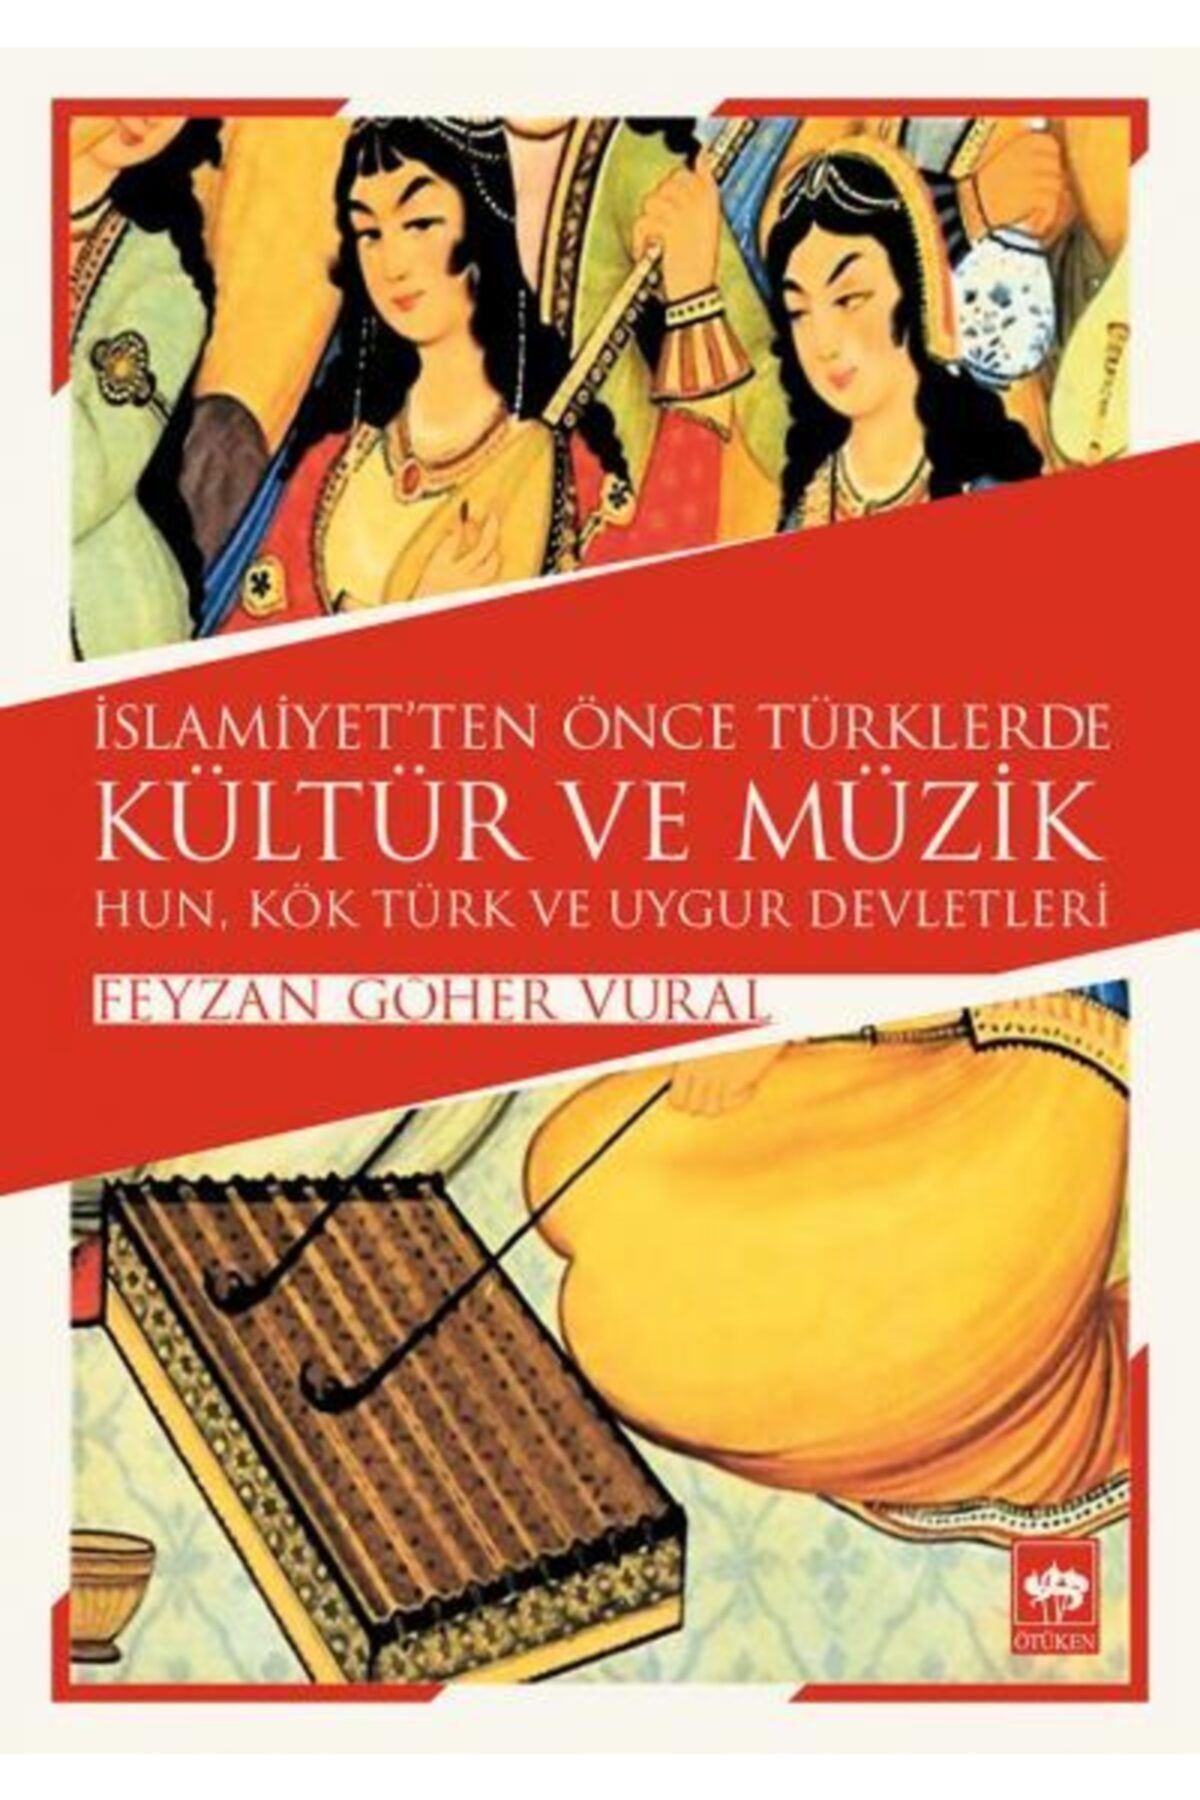 Ötüken Neşriyat Islamiyetten Önce Türklerde Kültür Ve Müzik & Hun, Kök Türk Ve Uygur Devletleri / Feyzan Göher Vural